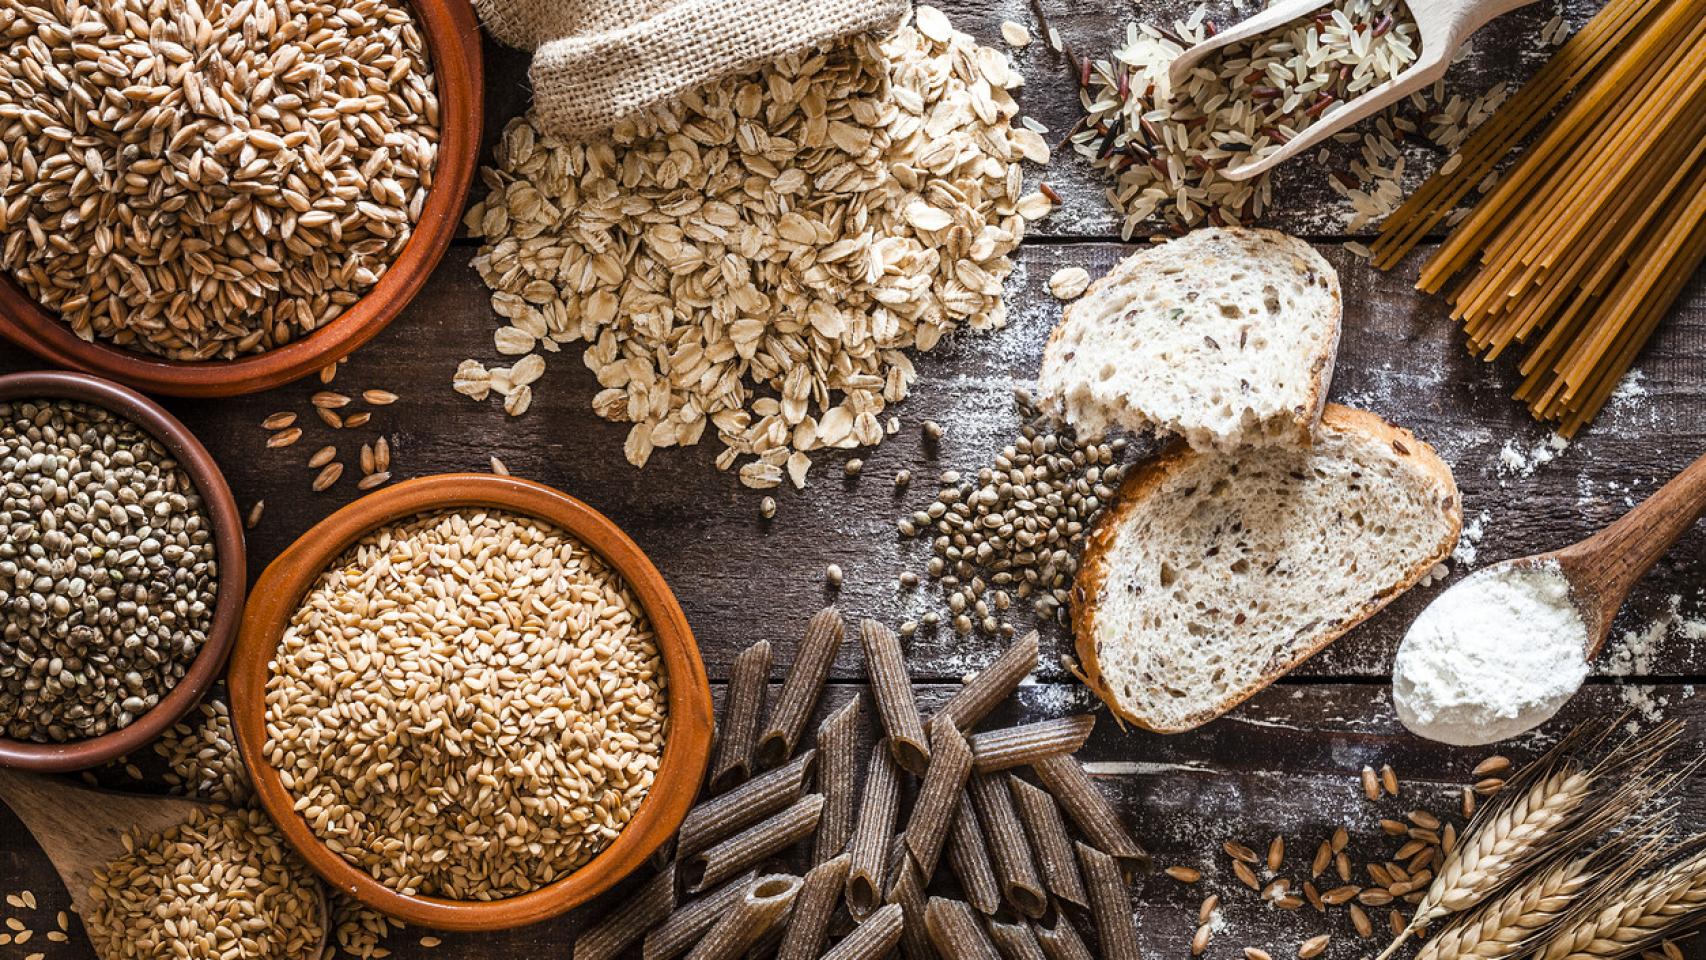 Las fibras presentes en algunos cereales tienen propiedades muy interesantes para perder peso.